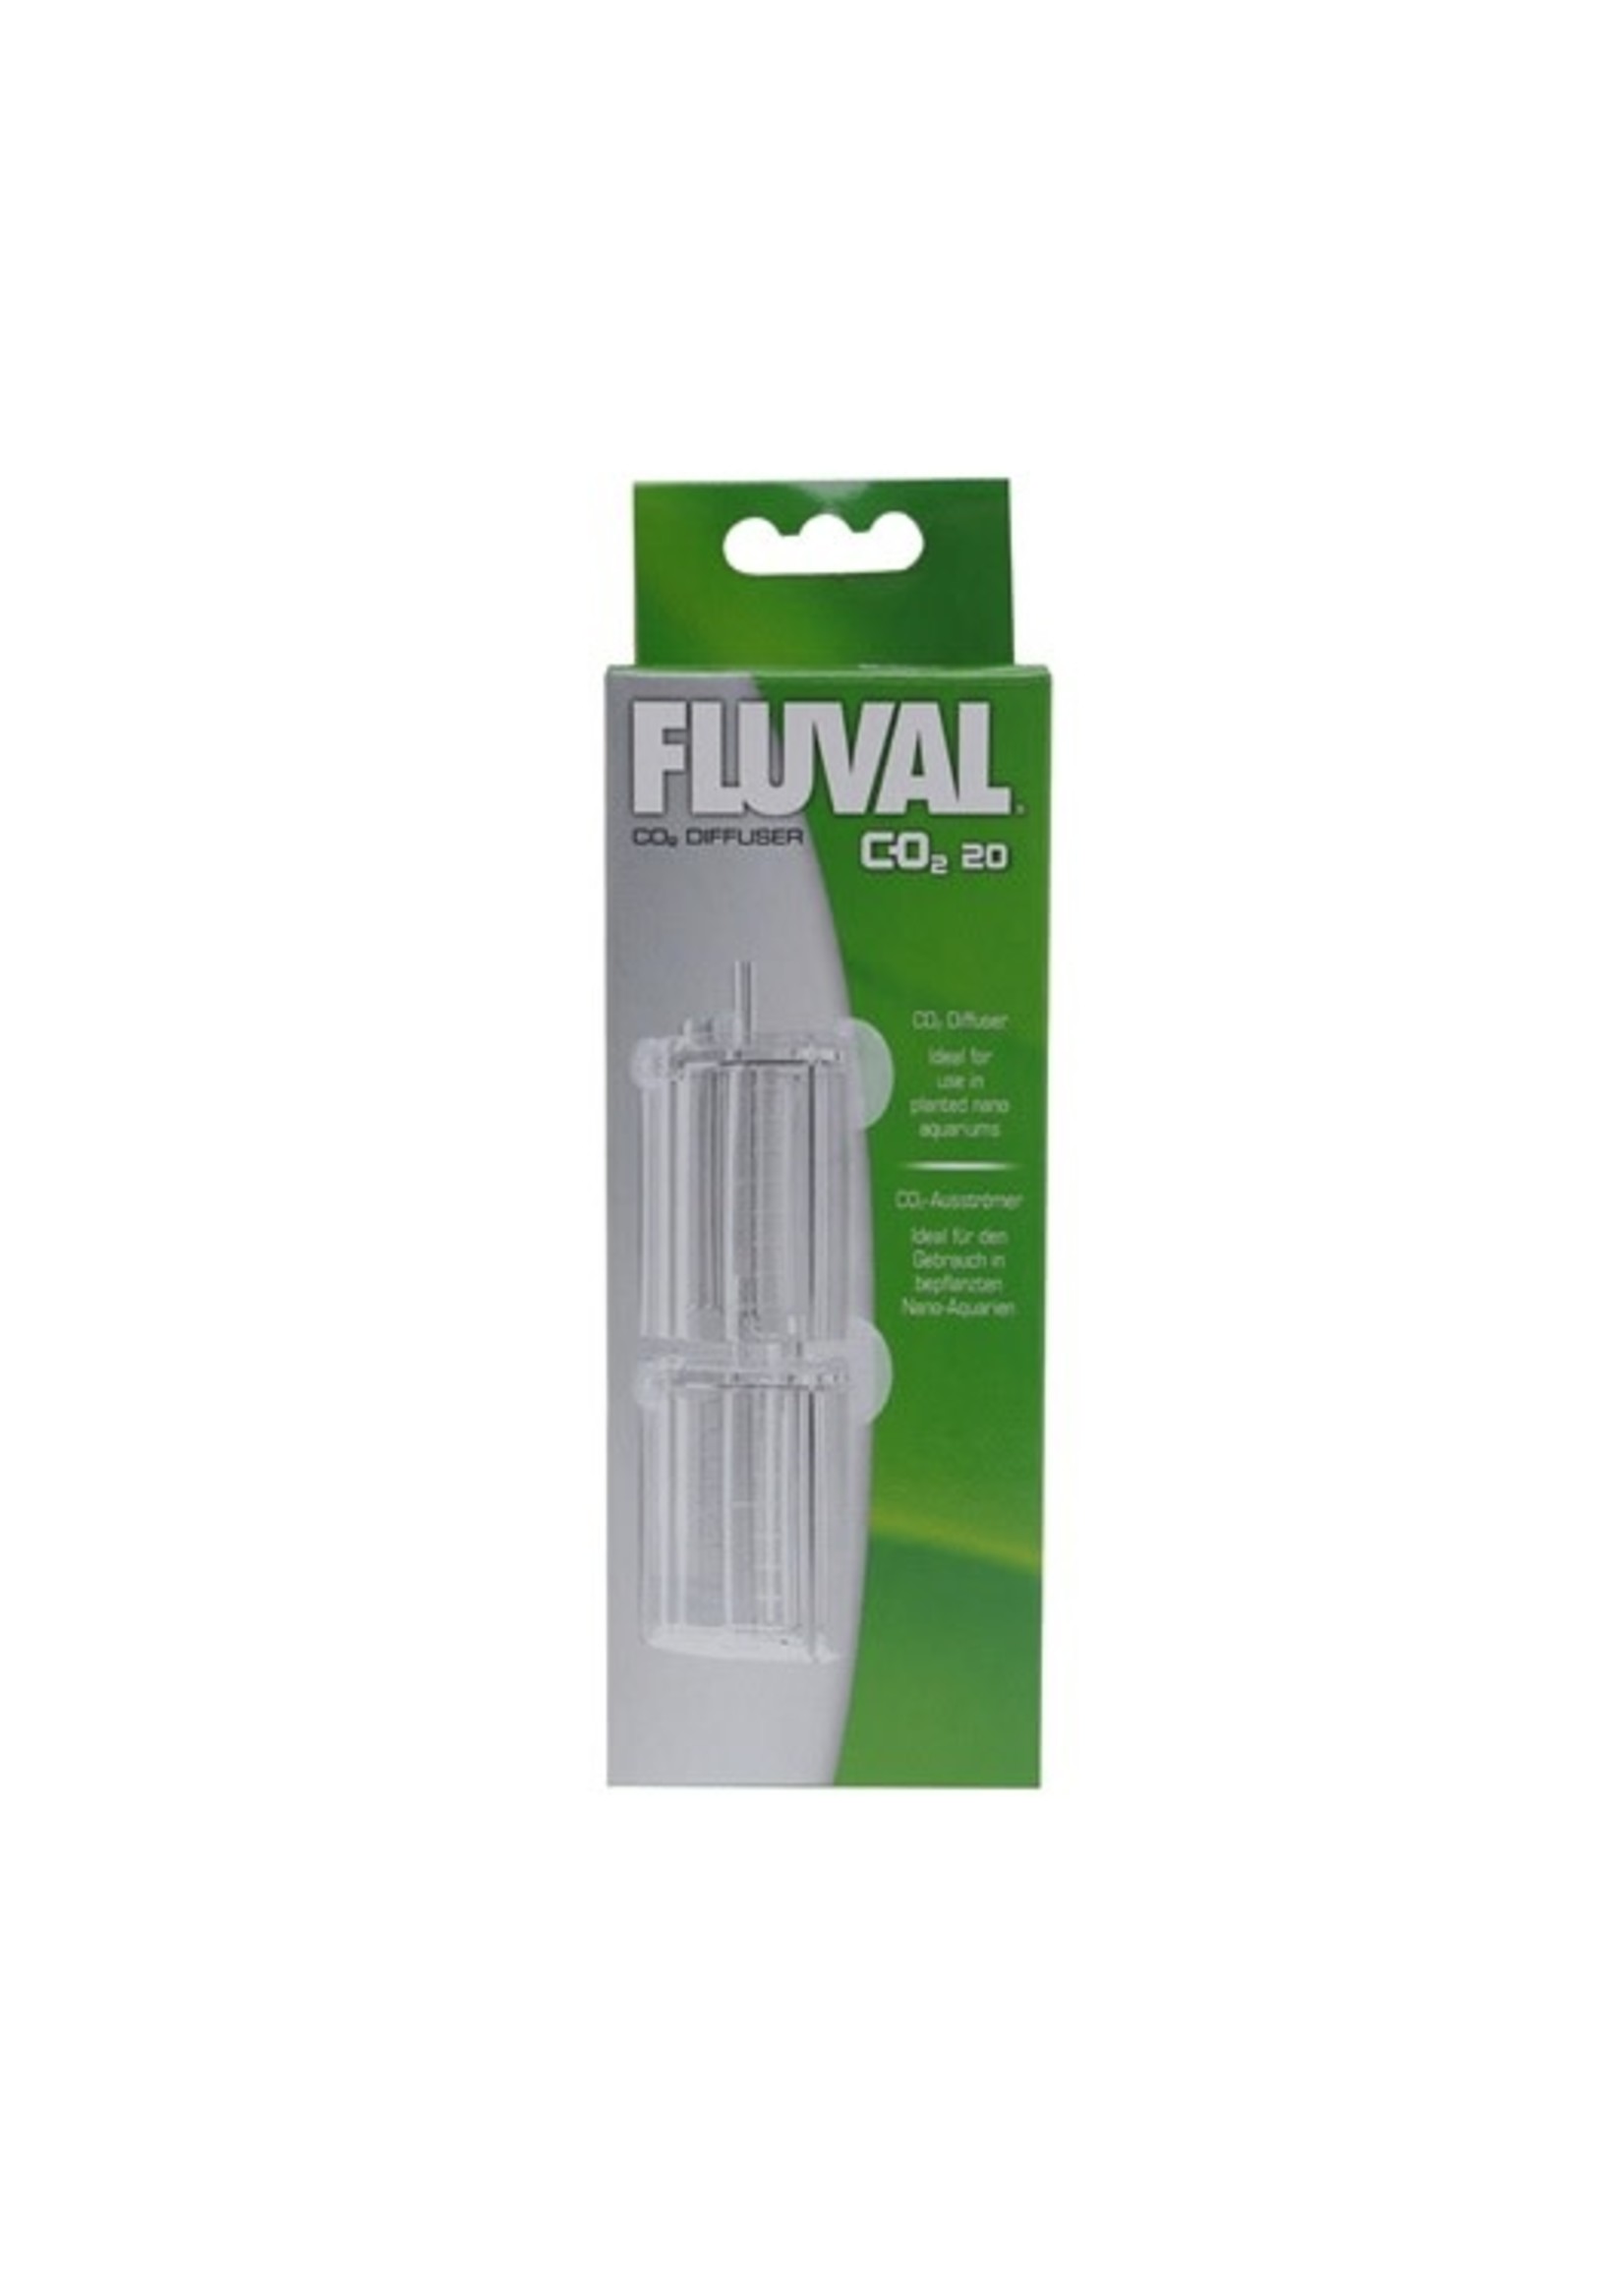 Fluval FLUVAL CO2 DIFFUSER